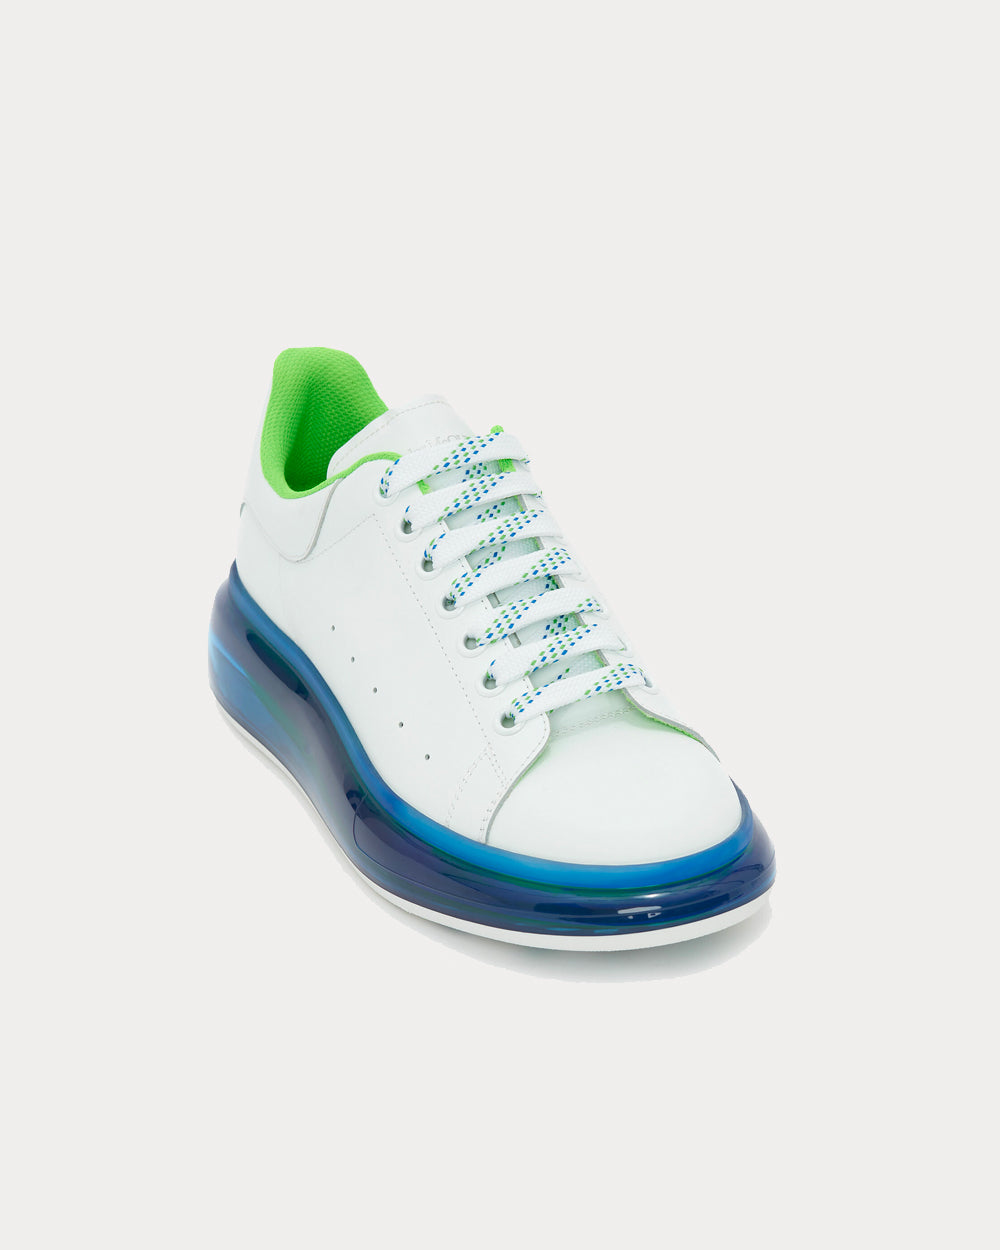 Alexander McQueen - Oversized White / Cobalt Blue / New Green Low Top Sneakers